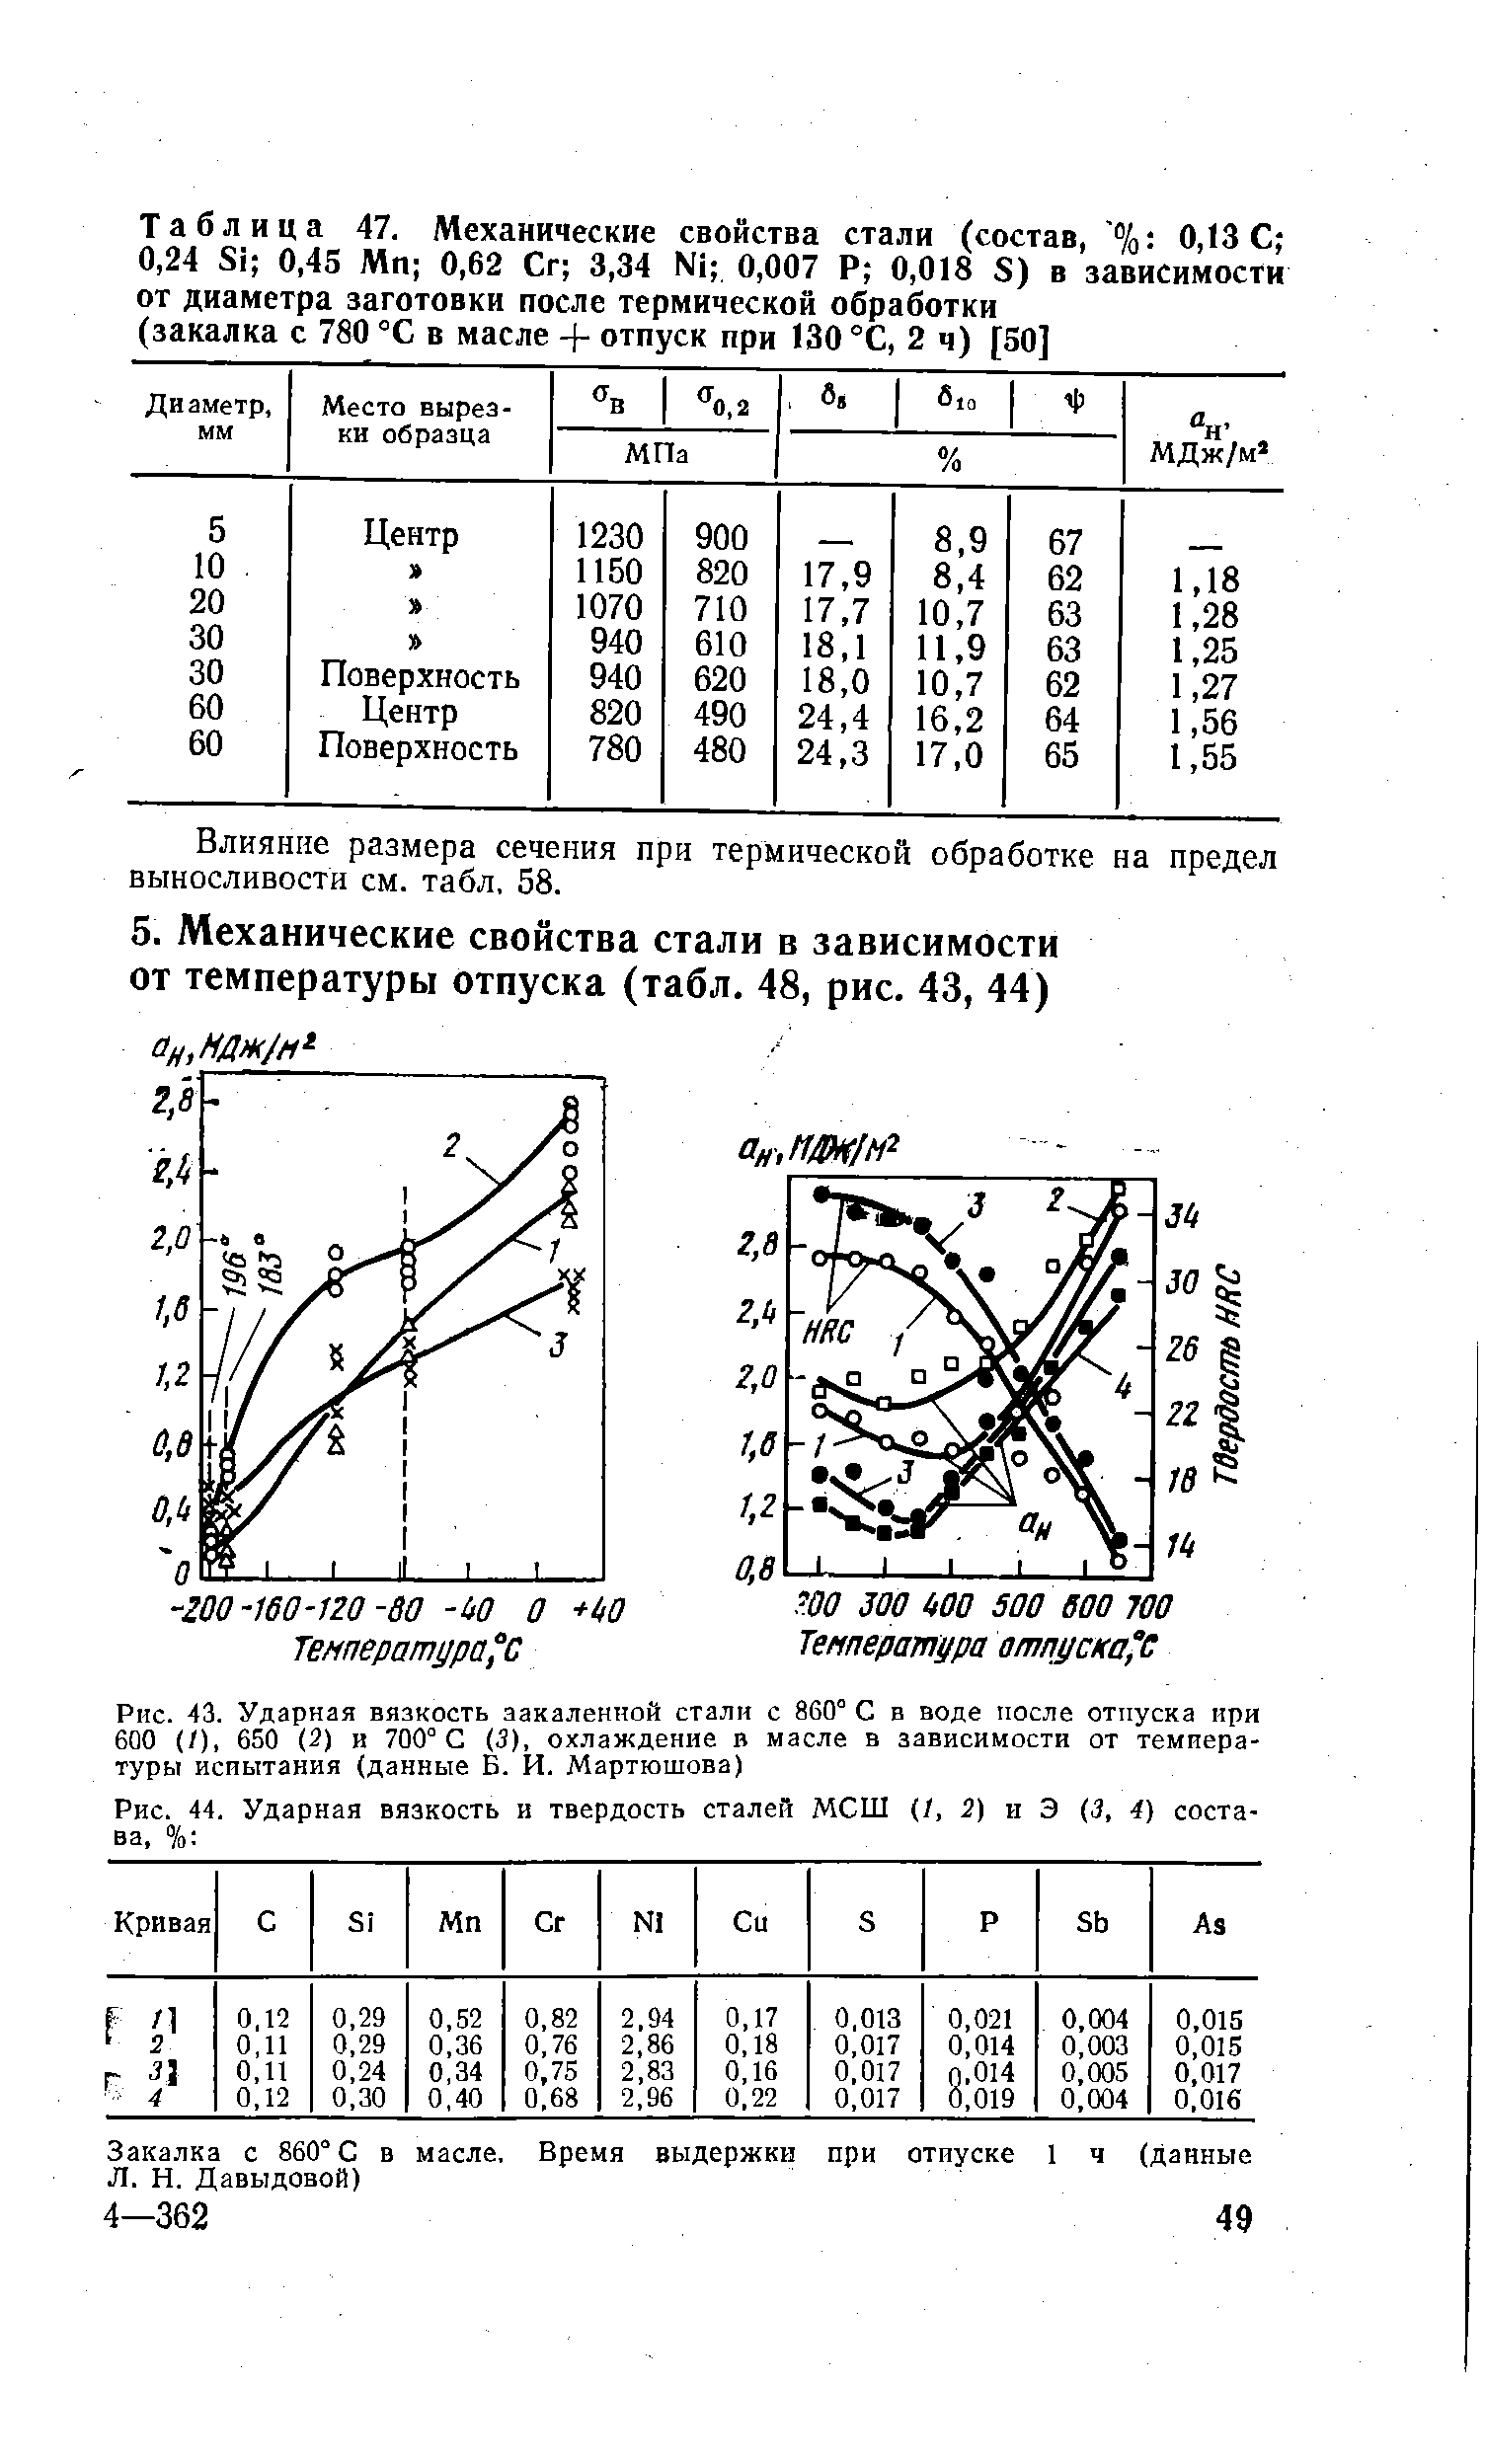 Рис. 44. <a href="/info/4821">Ударная вязкость</a> и <a href="/info/58652">твердость сталей</a> МСШ (/, 2) и Э (3, 4) состава, % 
